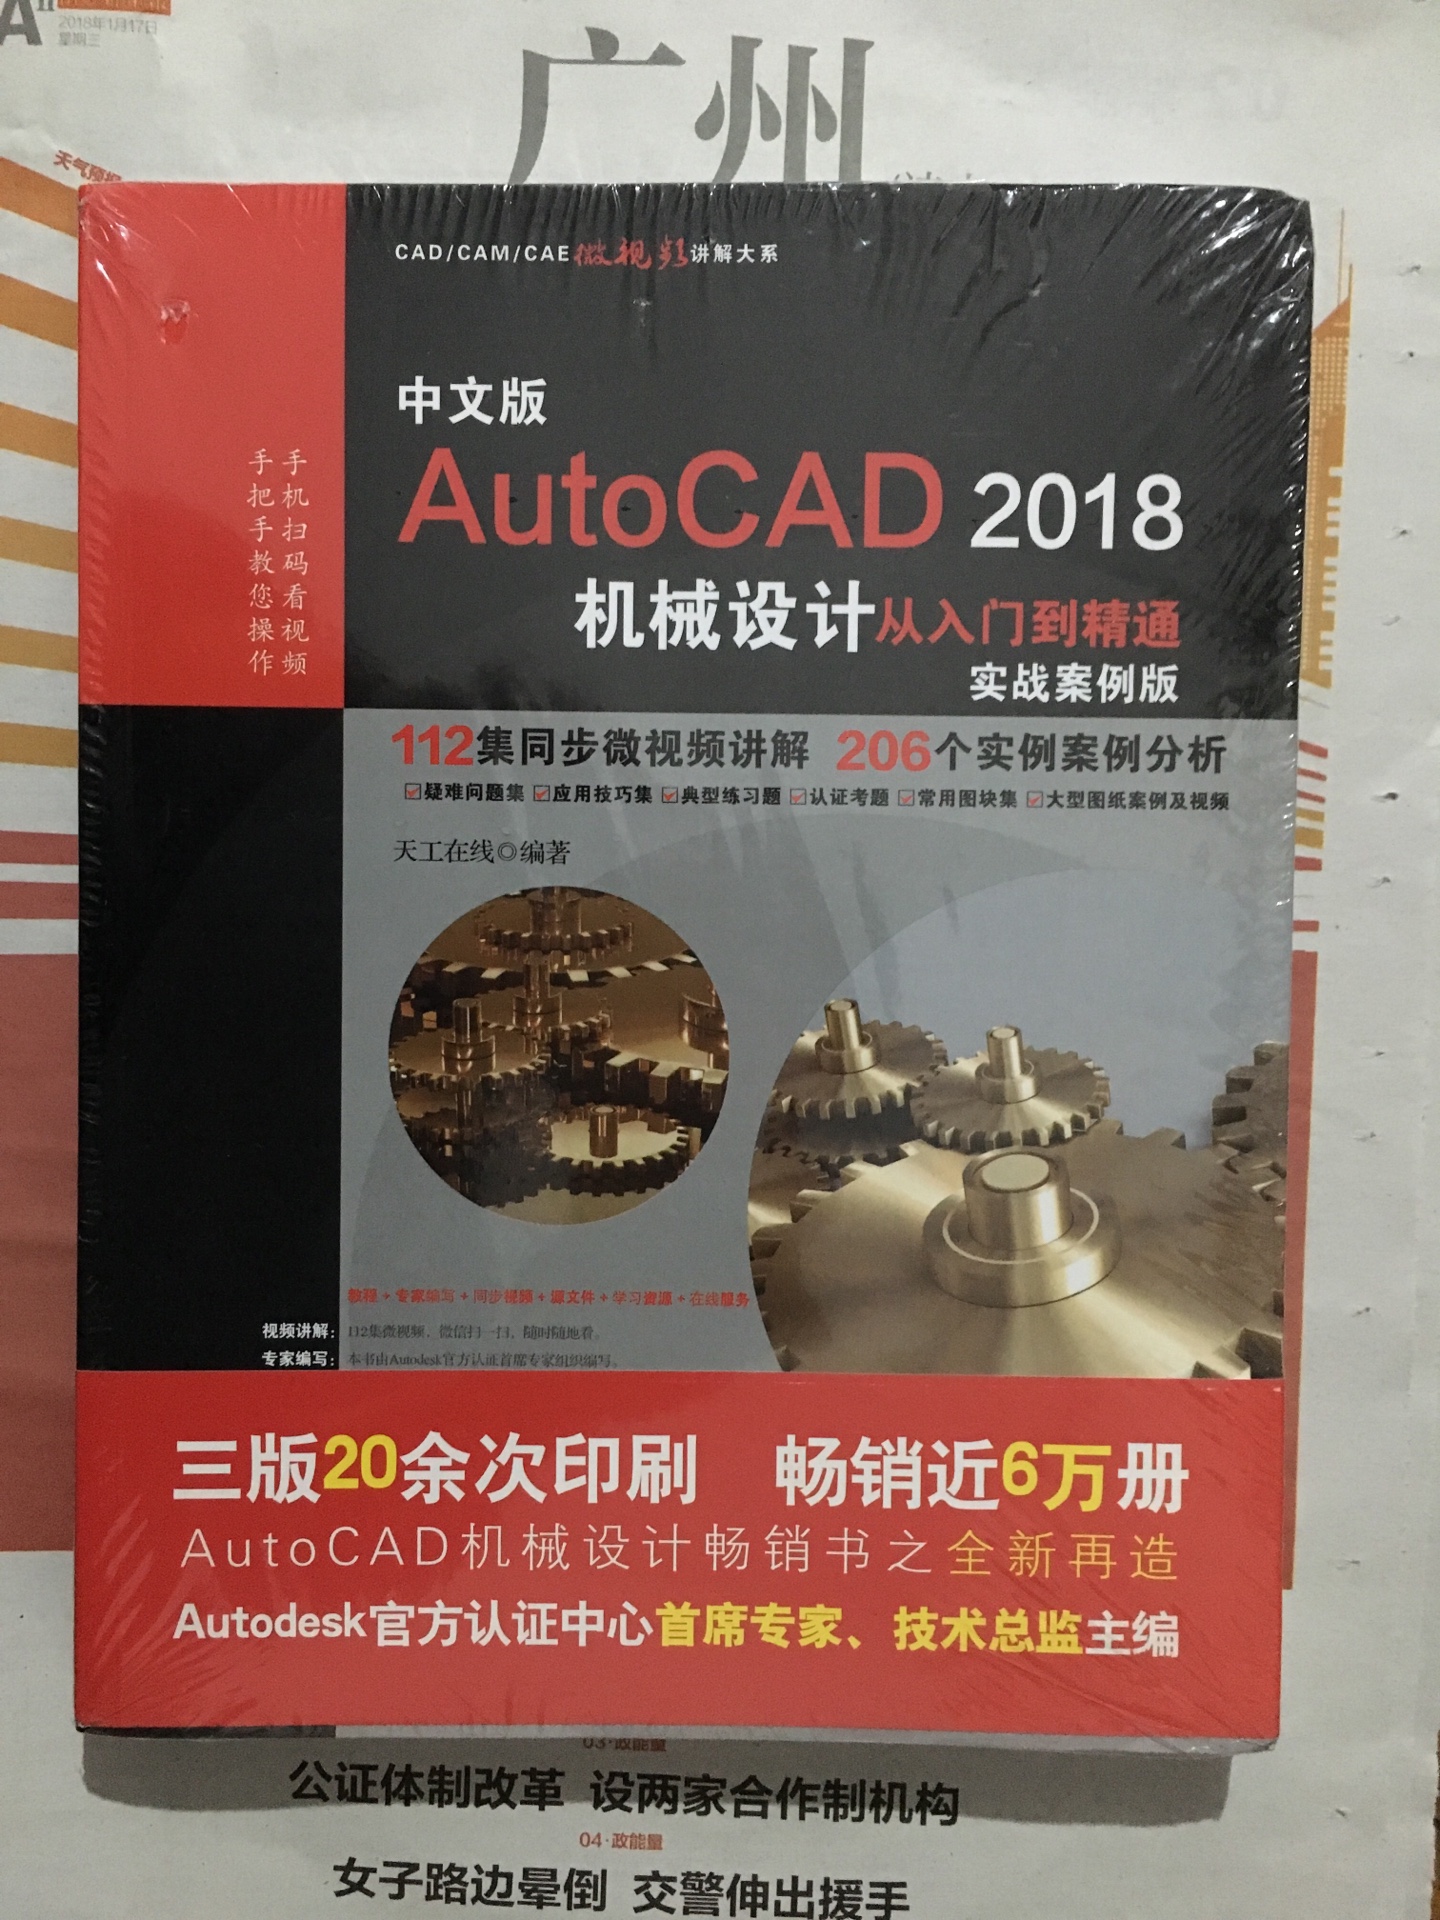 同时买了AutoCAD2018从入门到精通和AutoCAD2018机械设计从入门到精通两本书，大致内容相差不多。用来自学还是不错的，配合视频教程。